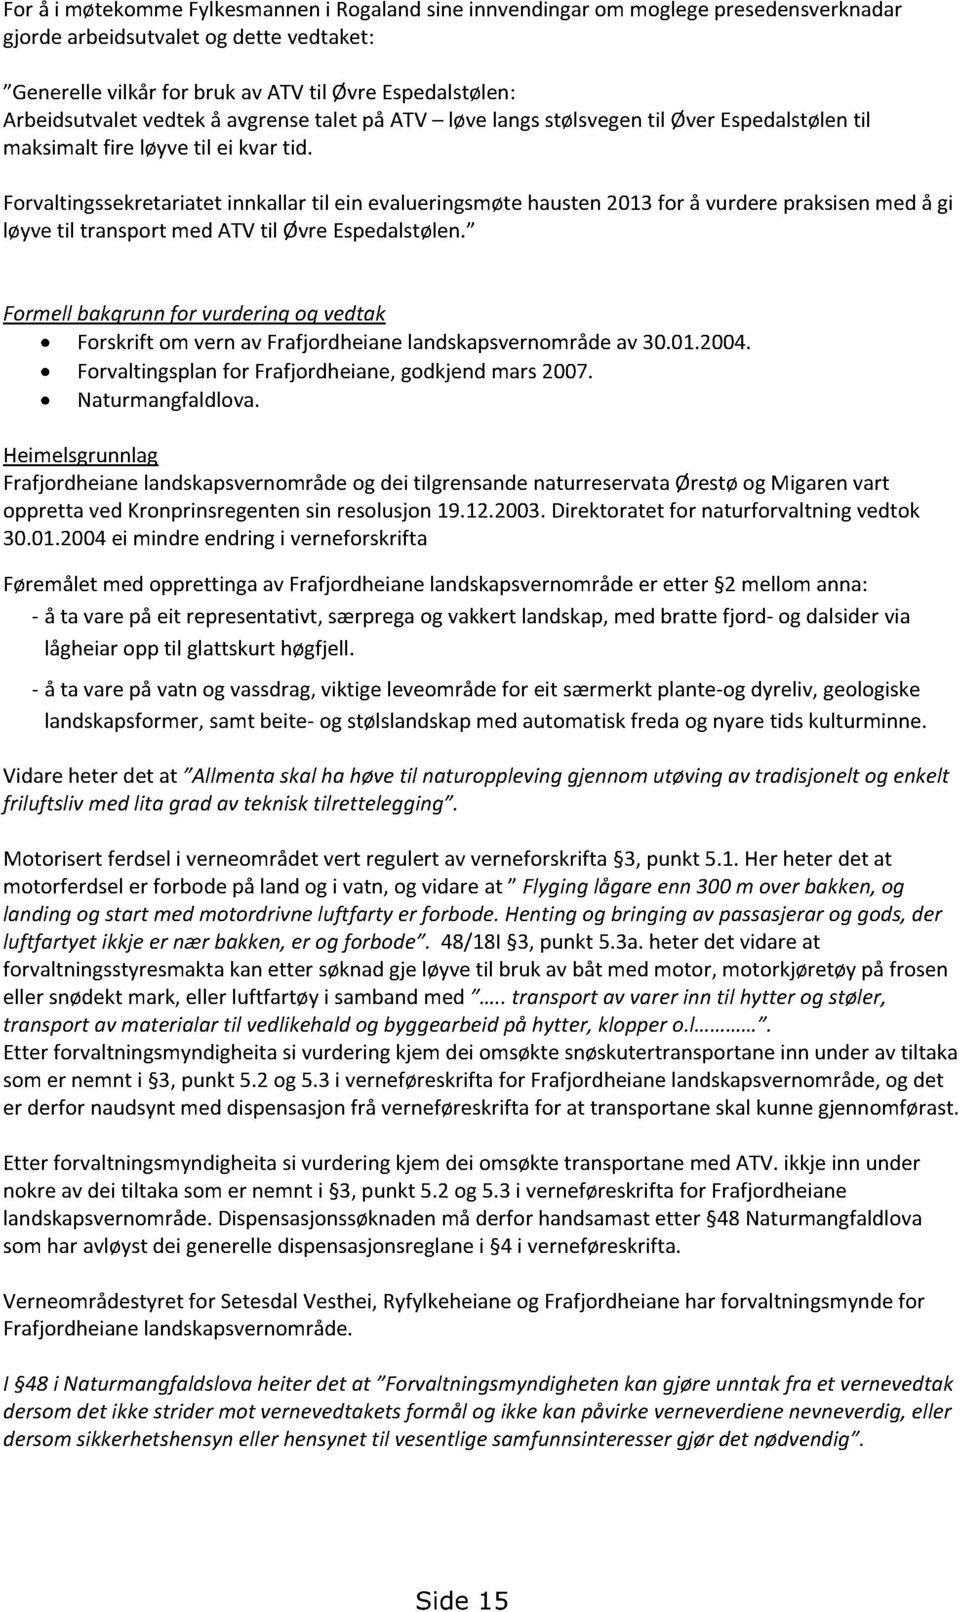 Forvaltingssekretariatet innkallartil ein evalueringsmøtehausten2013for å vurderepraksisenmed å gi løyvetil transport med ATVtil ØvreEspedalstølen.